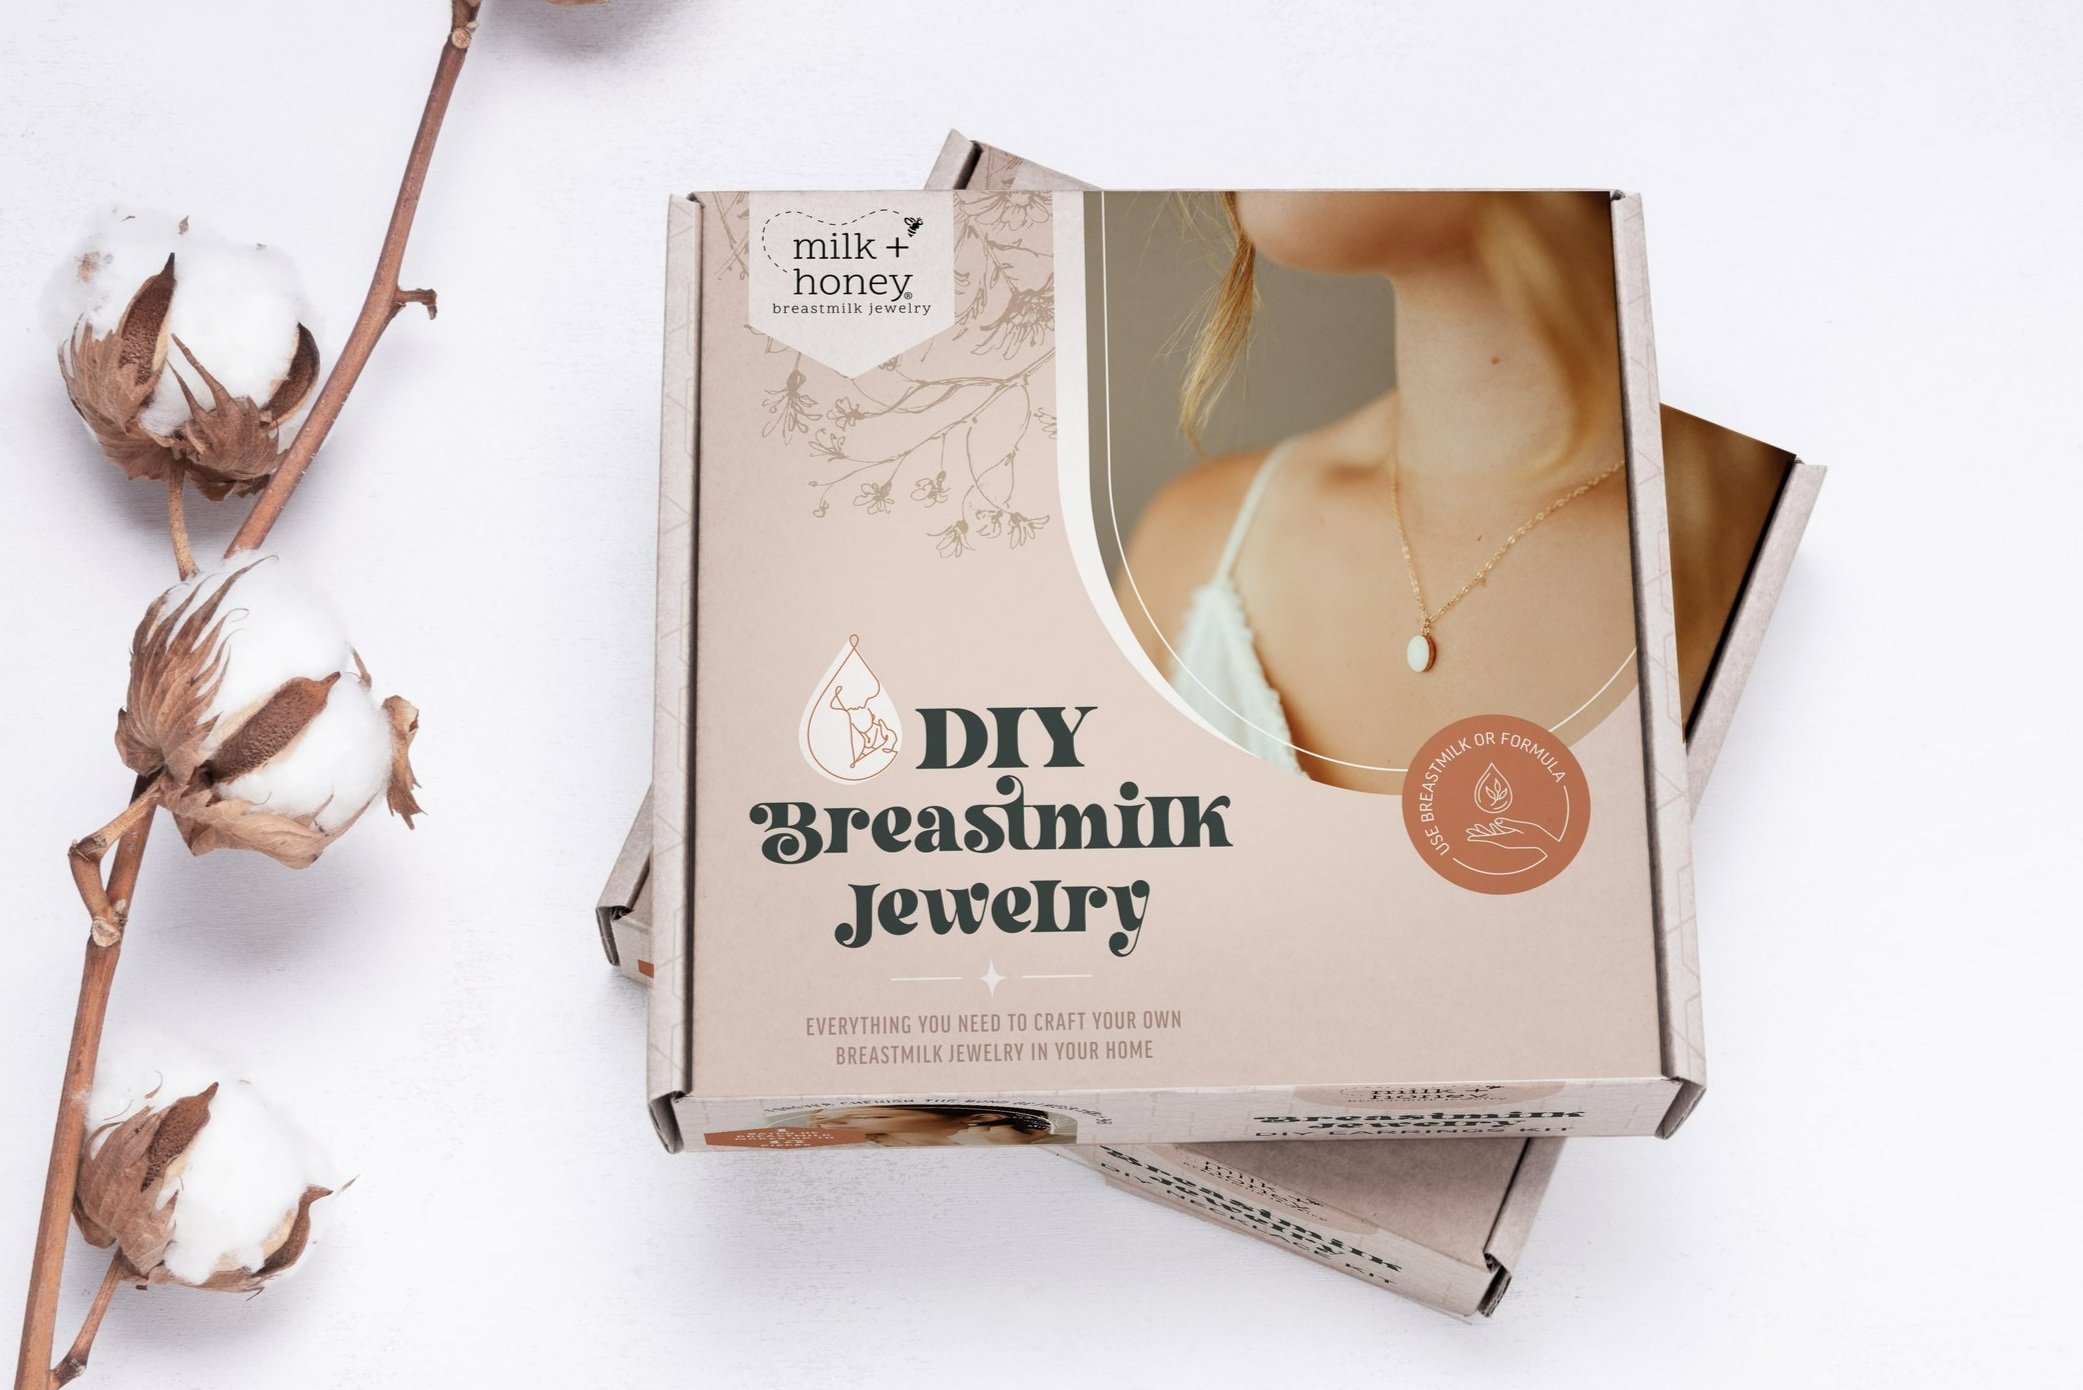 Altijd Besmettelijke ziekte Verhandeling Milk + Honey — How to Make your Own Breastmilk Jewelry using our DIY Kit